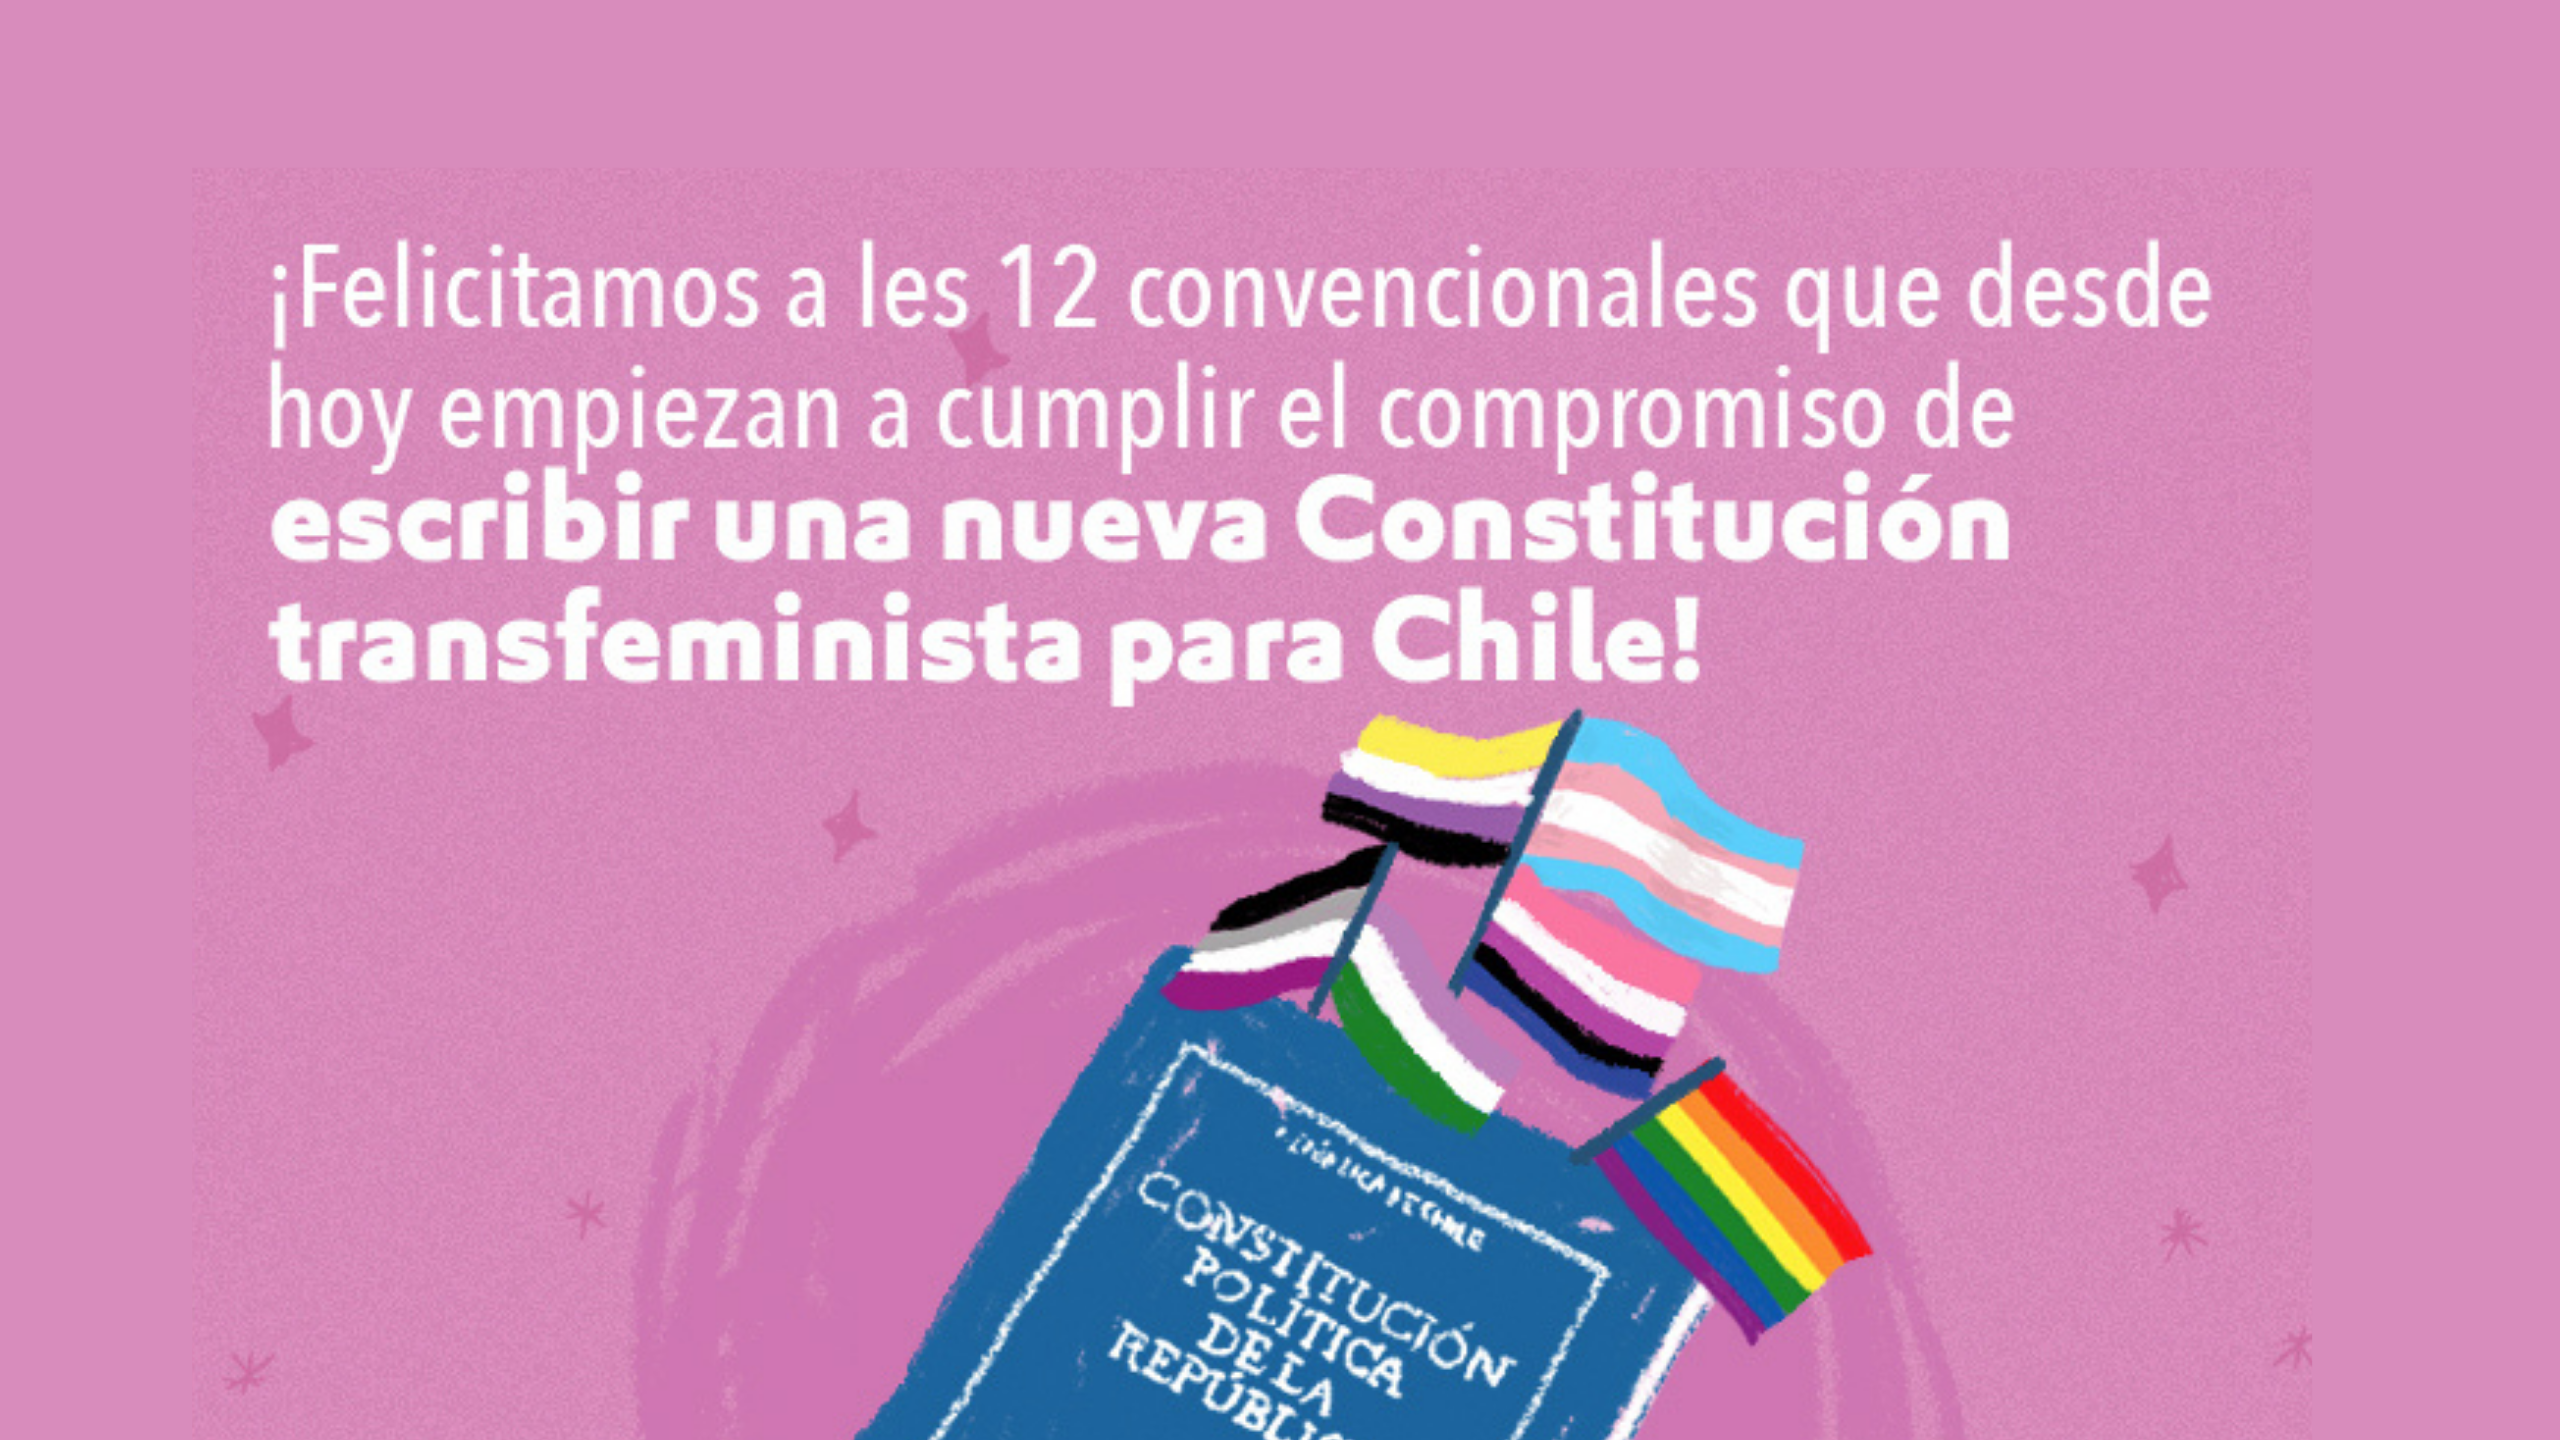 ¡Felicitamos a les convencionales que desde hoy empiezan a cumplir el compromiso de escribir una nueva Constitución transfeminista para Chile!